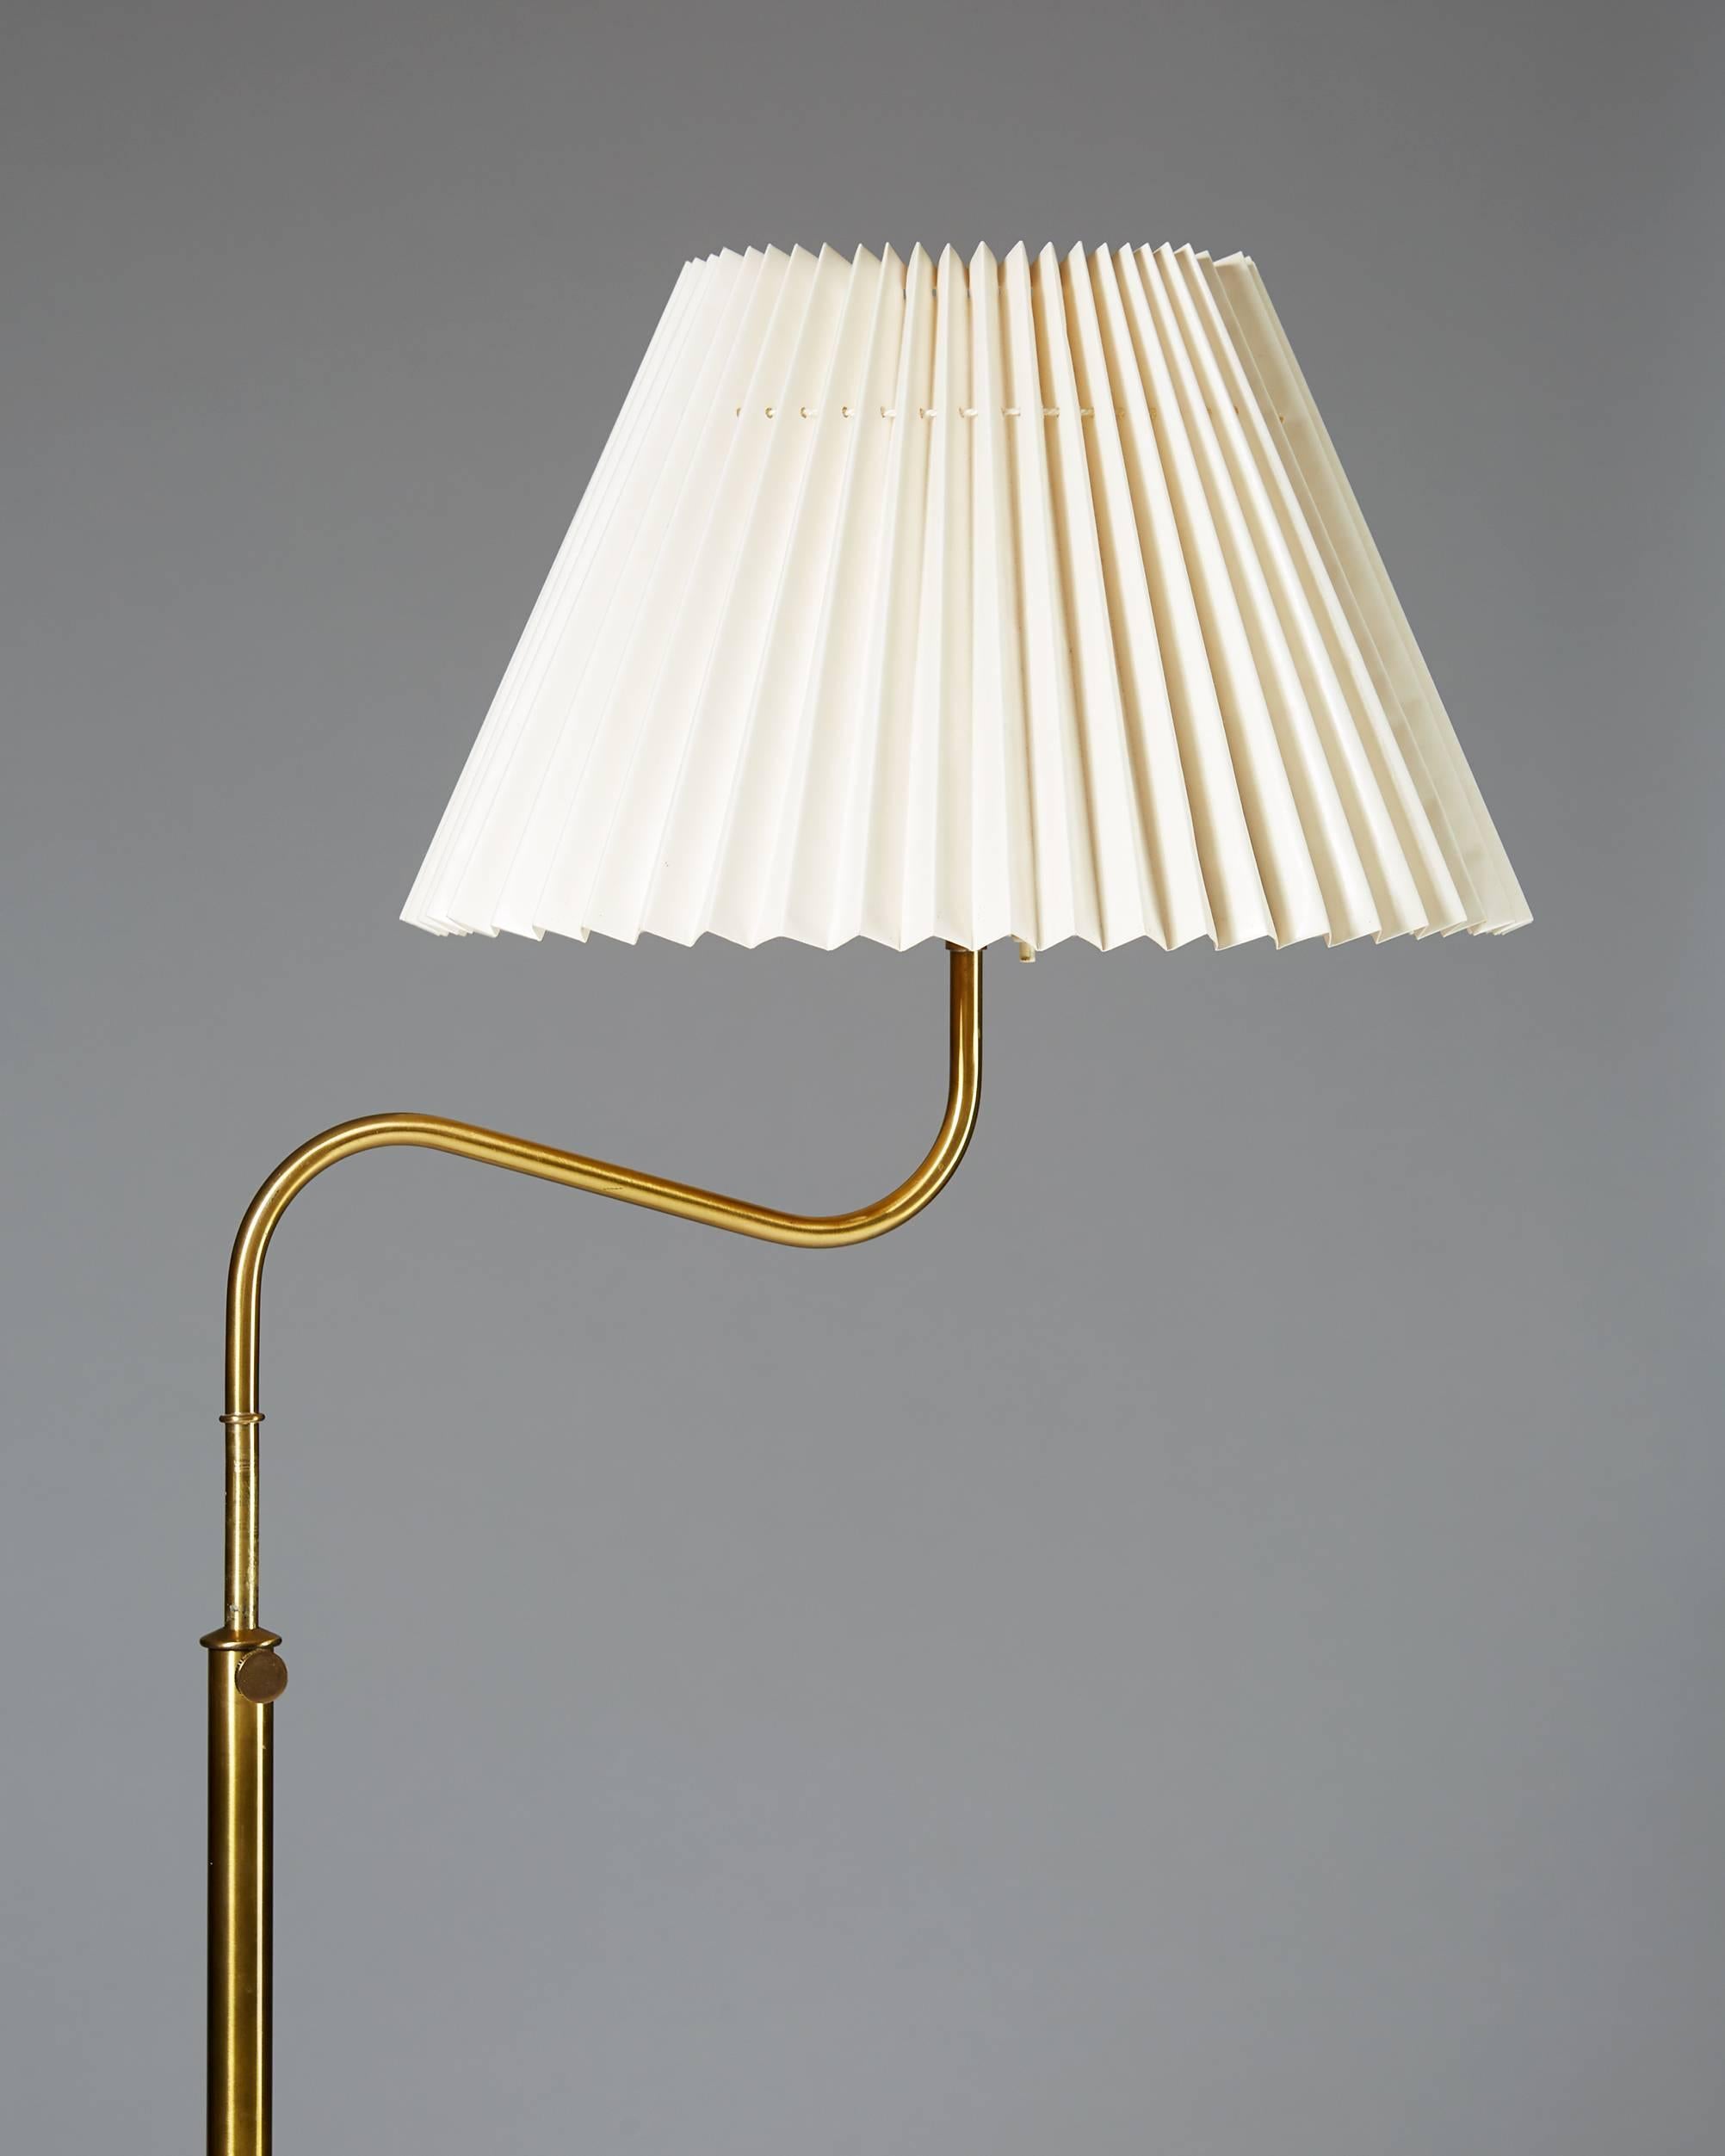 Scandinavian Modern Floor Lamp Model 2568 Designed by Josef Frank for Svenskt Tenn, Sweden, 1939 